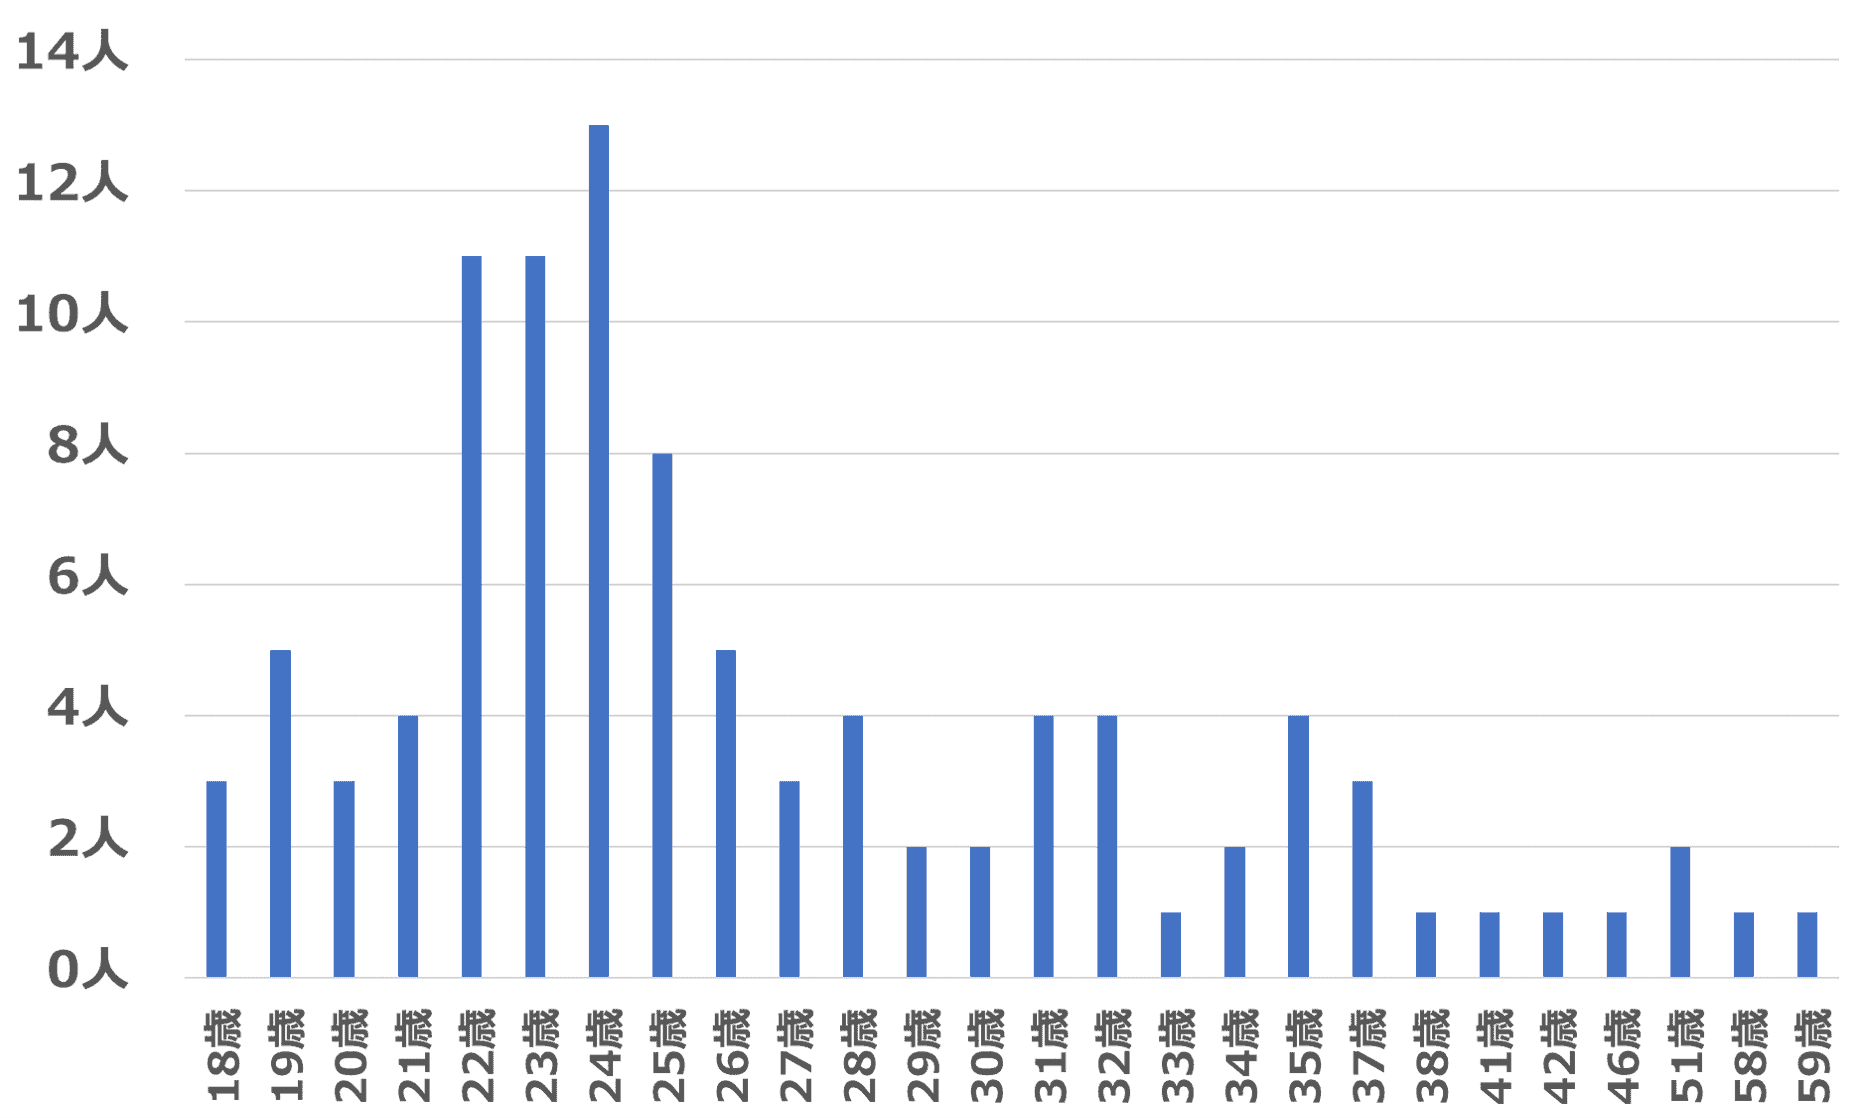 タップルの年齢ごとの女性ログインユーザー数を示したグラフ